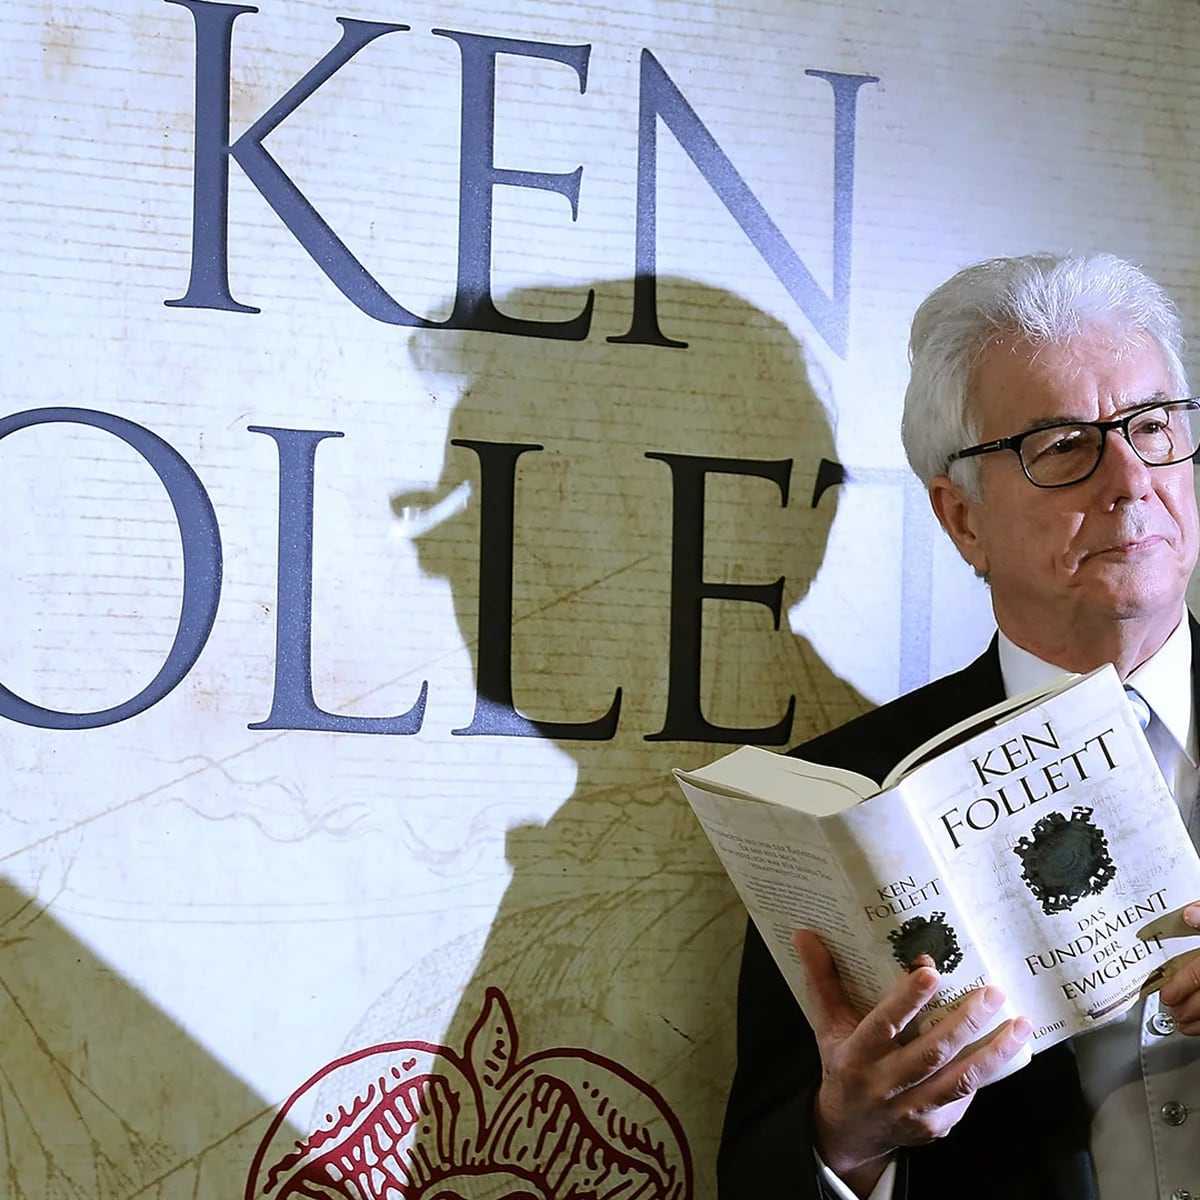 Librería Zebras - Hace 30 años, Ken Follett publicó en español su novela  más popular, Los pilares de la Tierra, que ha vendido más de veintisiete  millones de ejemplares en todo el